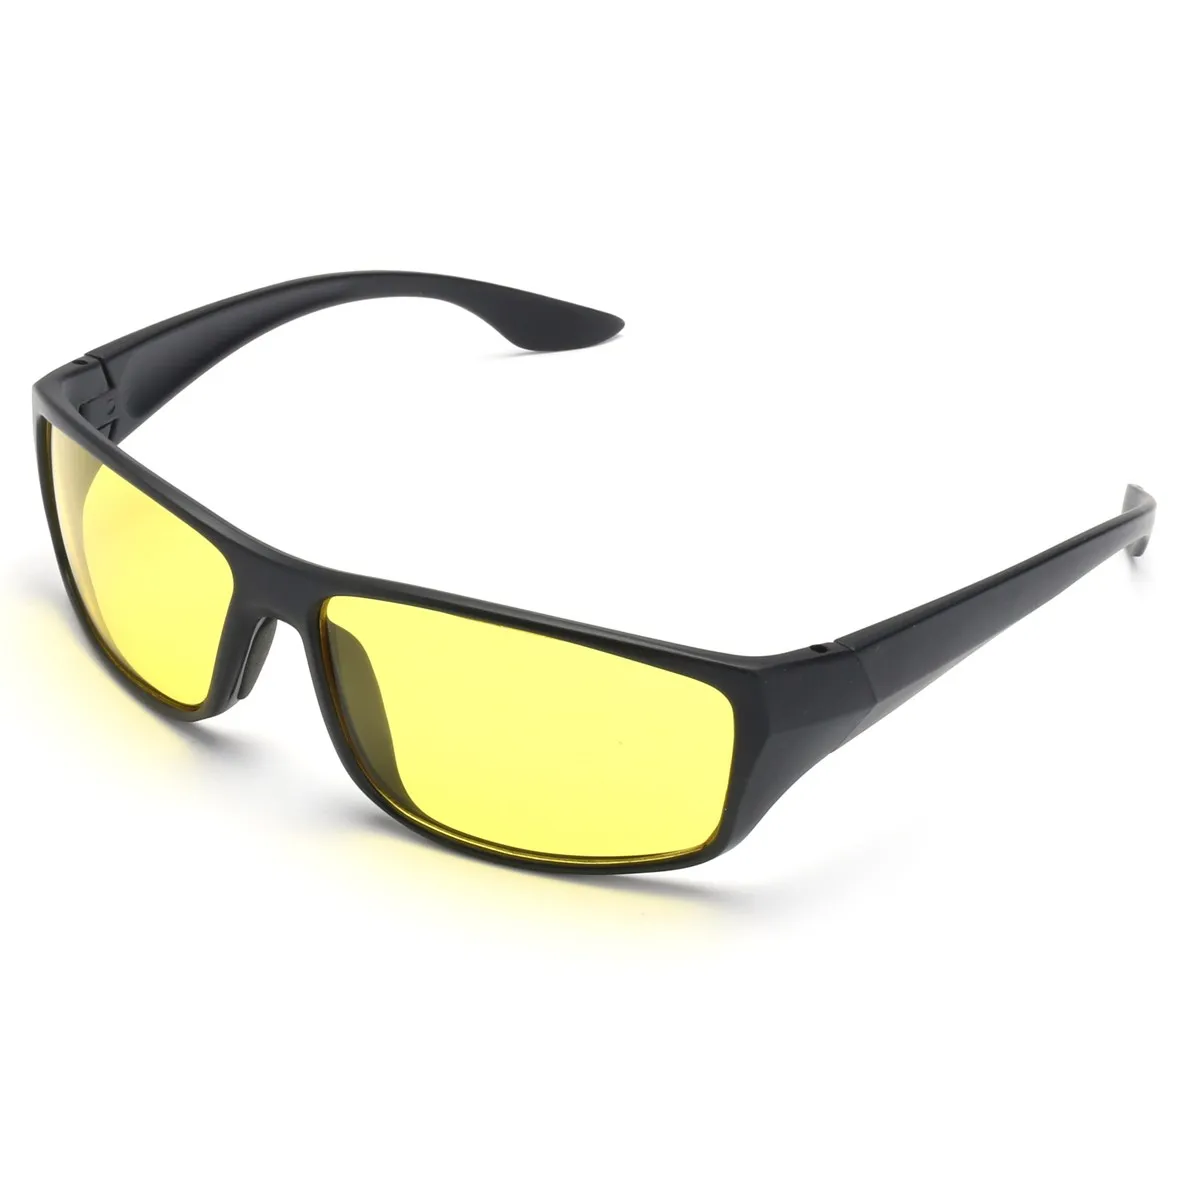 Очки для ночного вождения с антибликовым покрытием, защитные очки для водителя, защитные очки для рабочего места, защита глаз, Safurance, унисекс